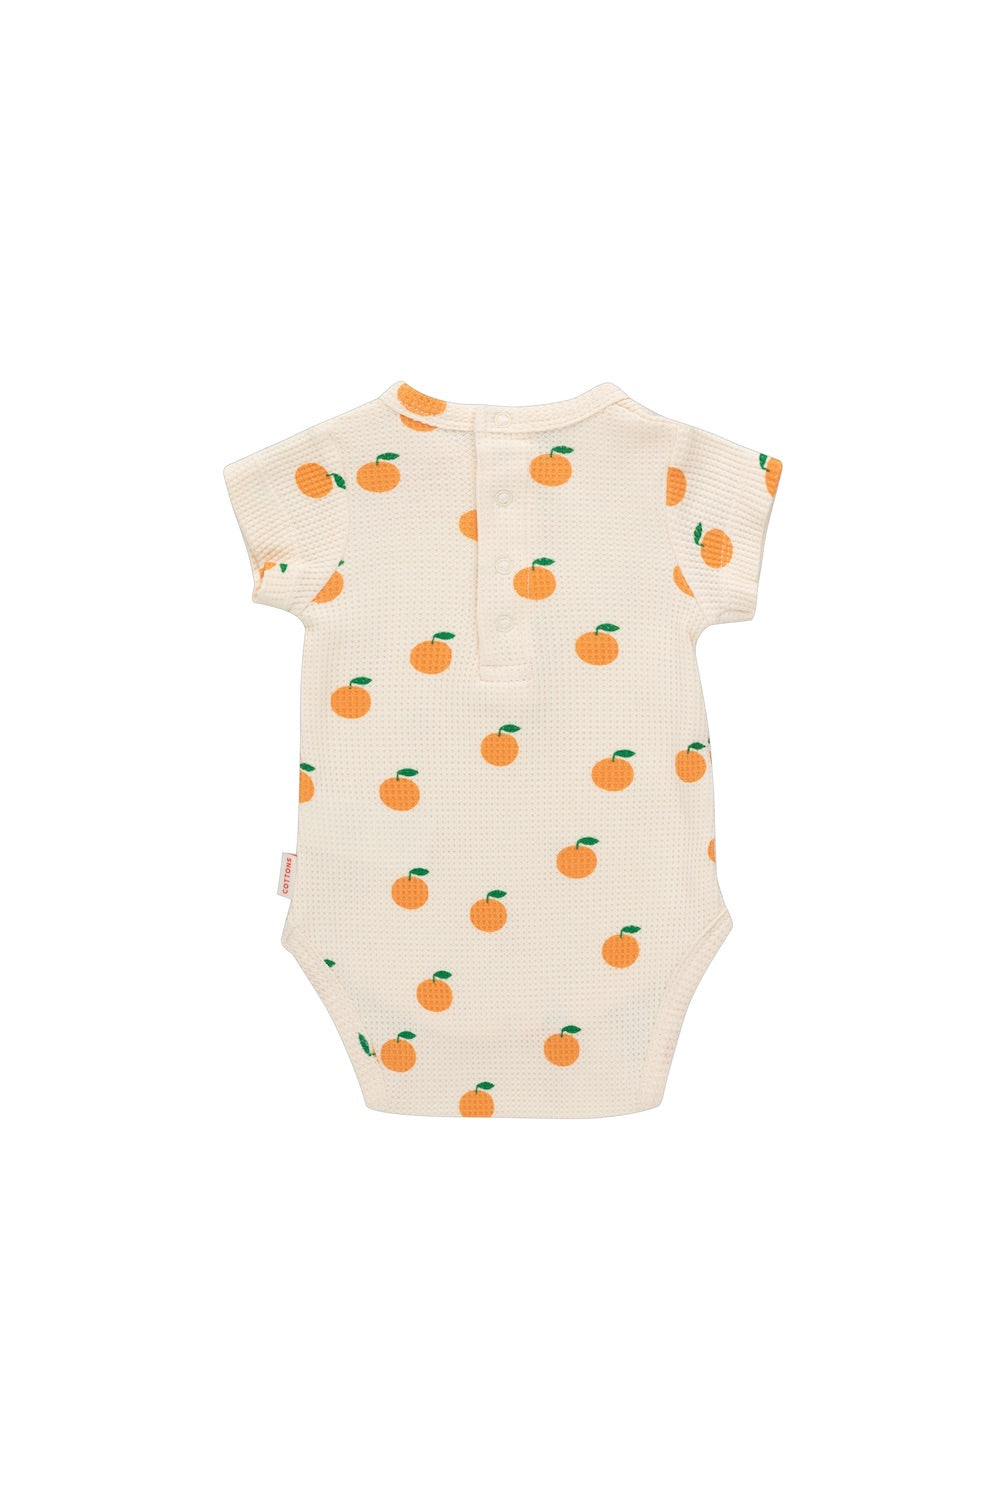 Tiny Cottons Oranges Body - Light Cream/Orange